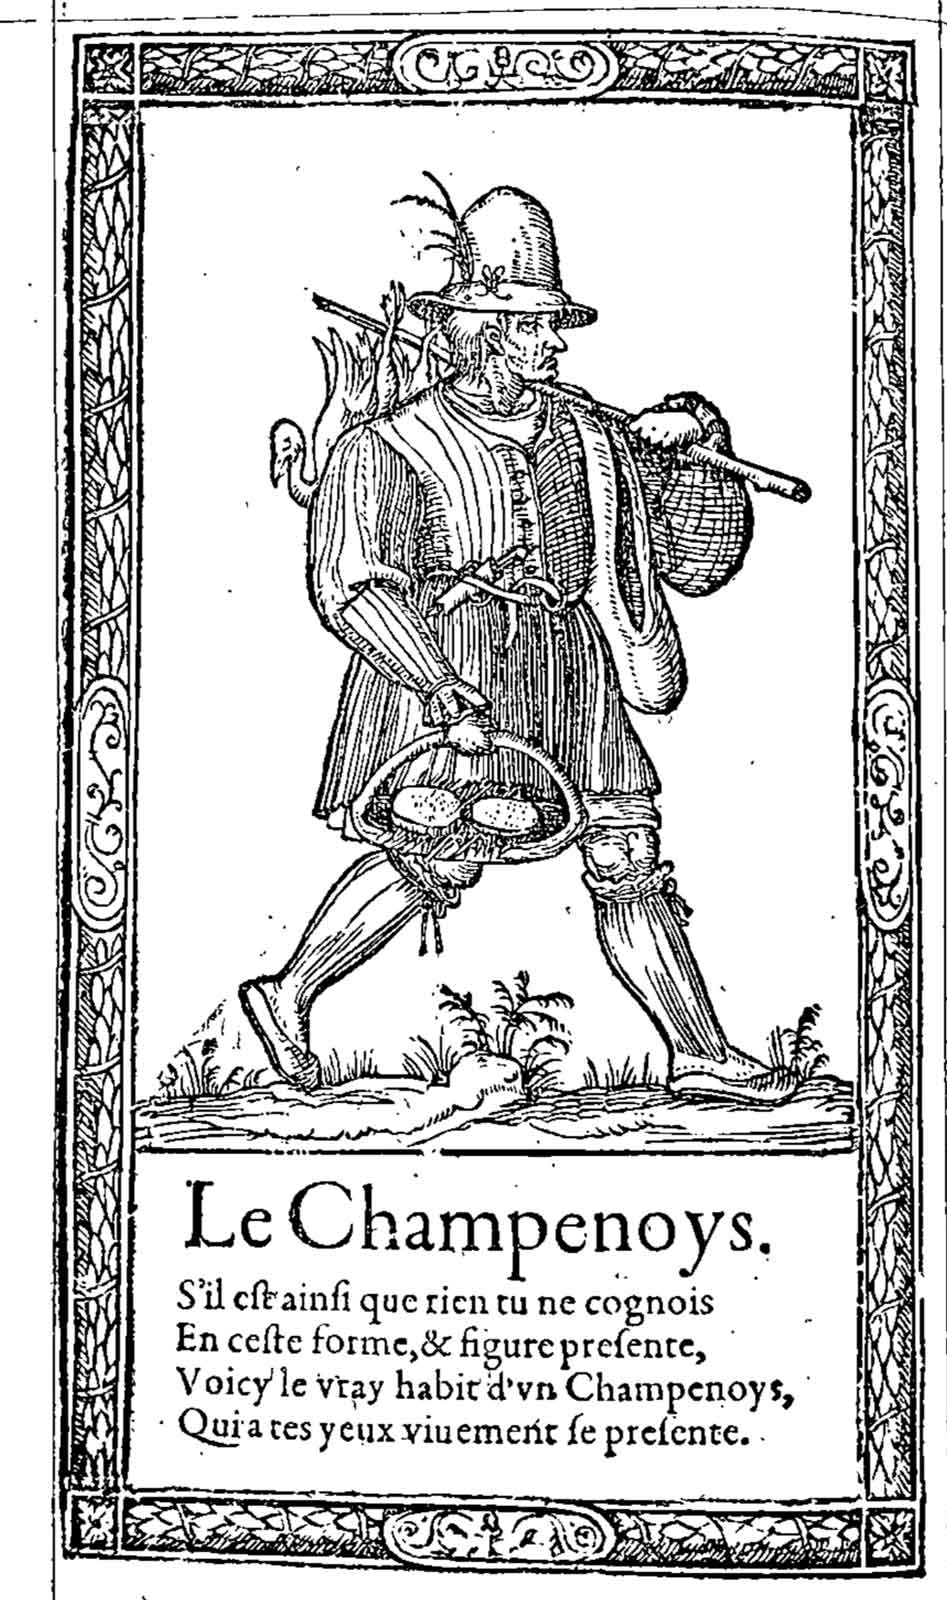 Le Champenoys. Desprez, Recueil de la diversité des habits (1564)